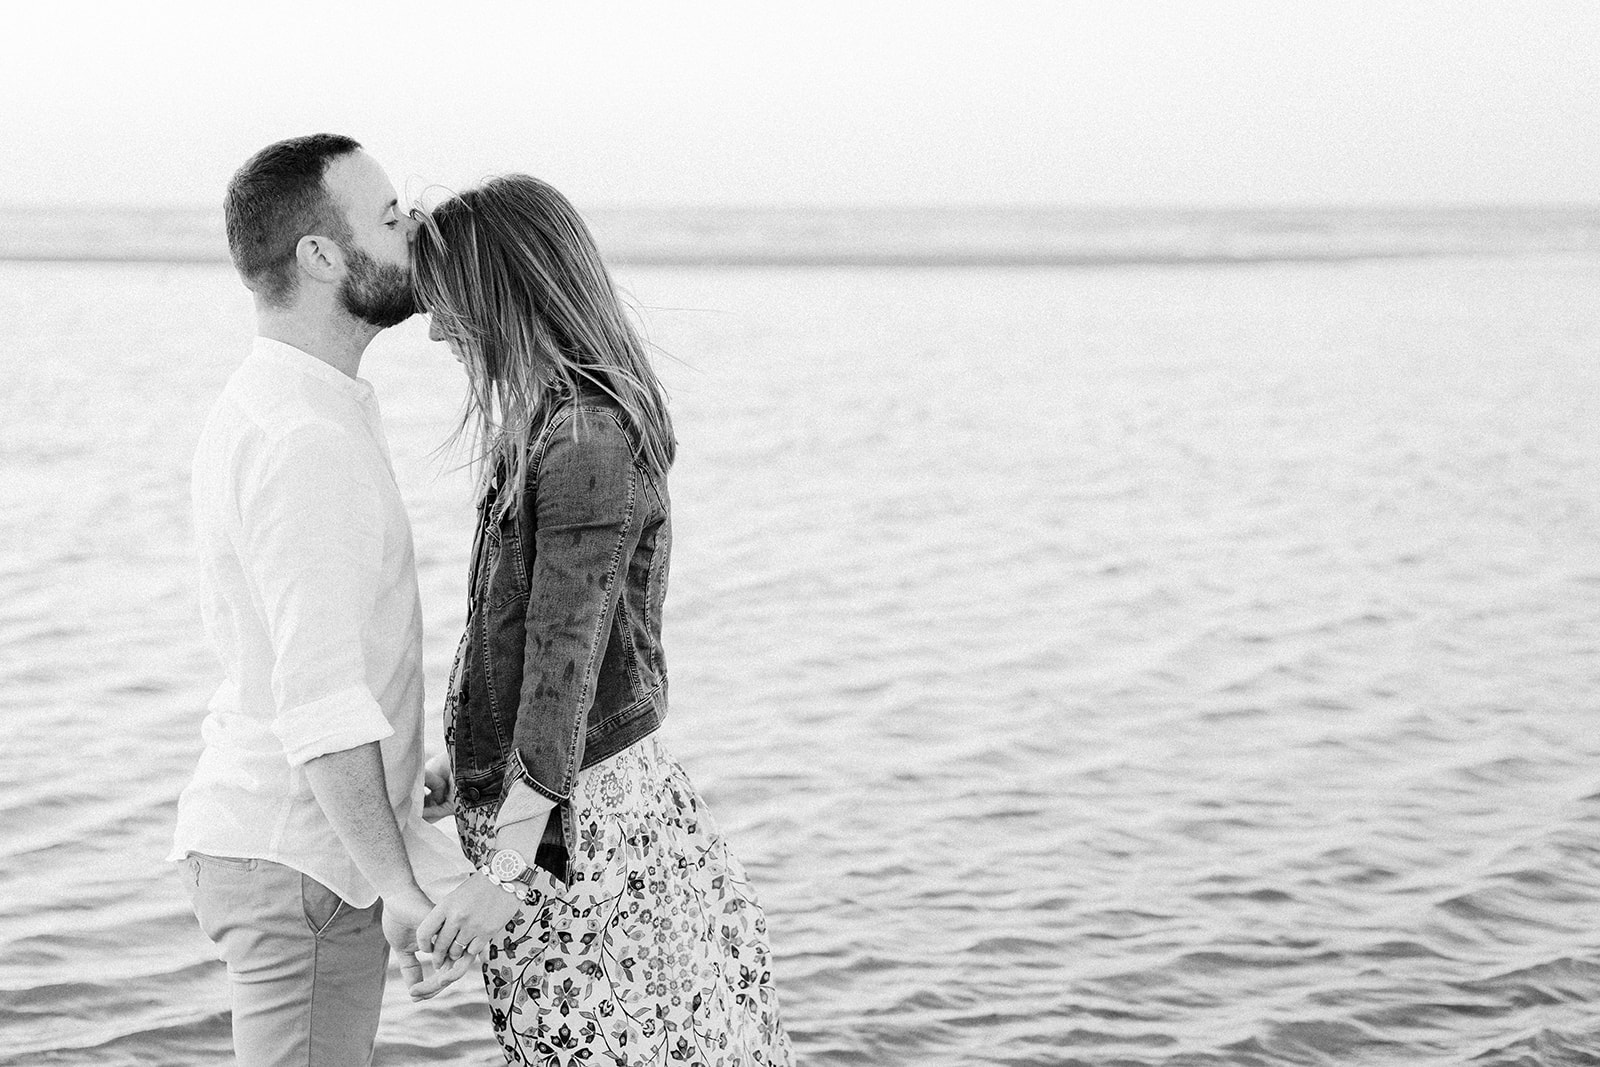 Séance couple sur la plage, les amoureux s'embrassent